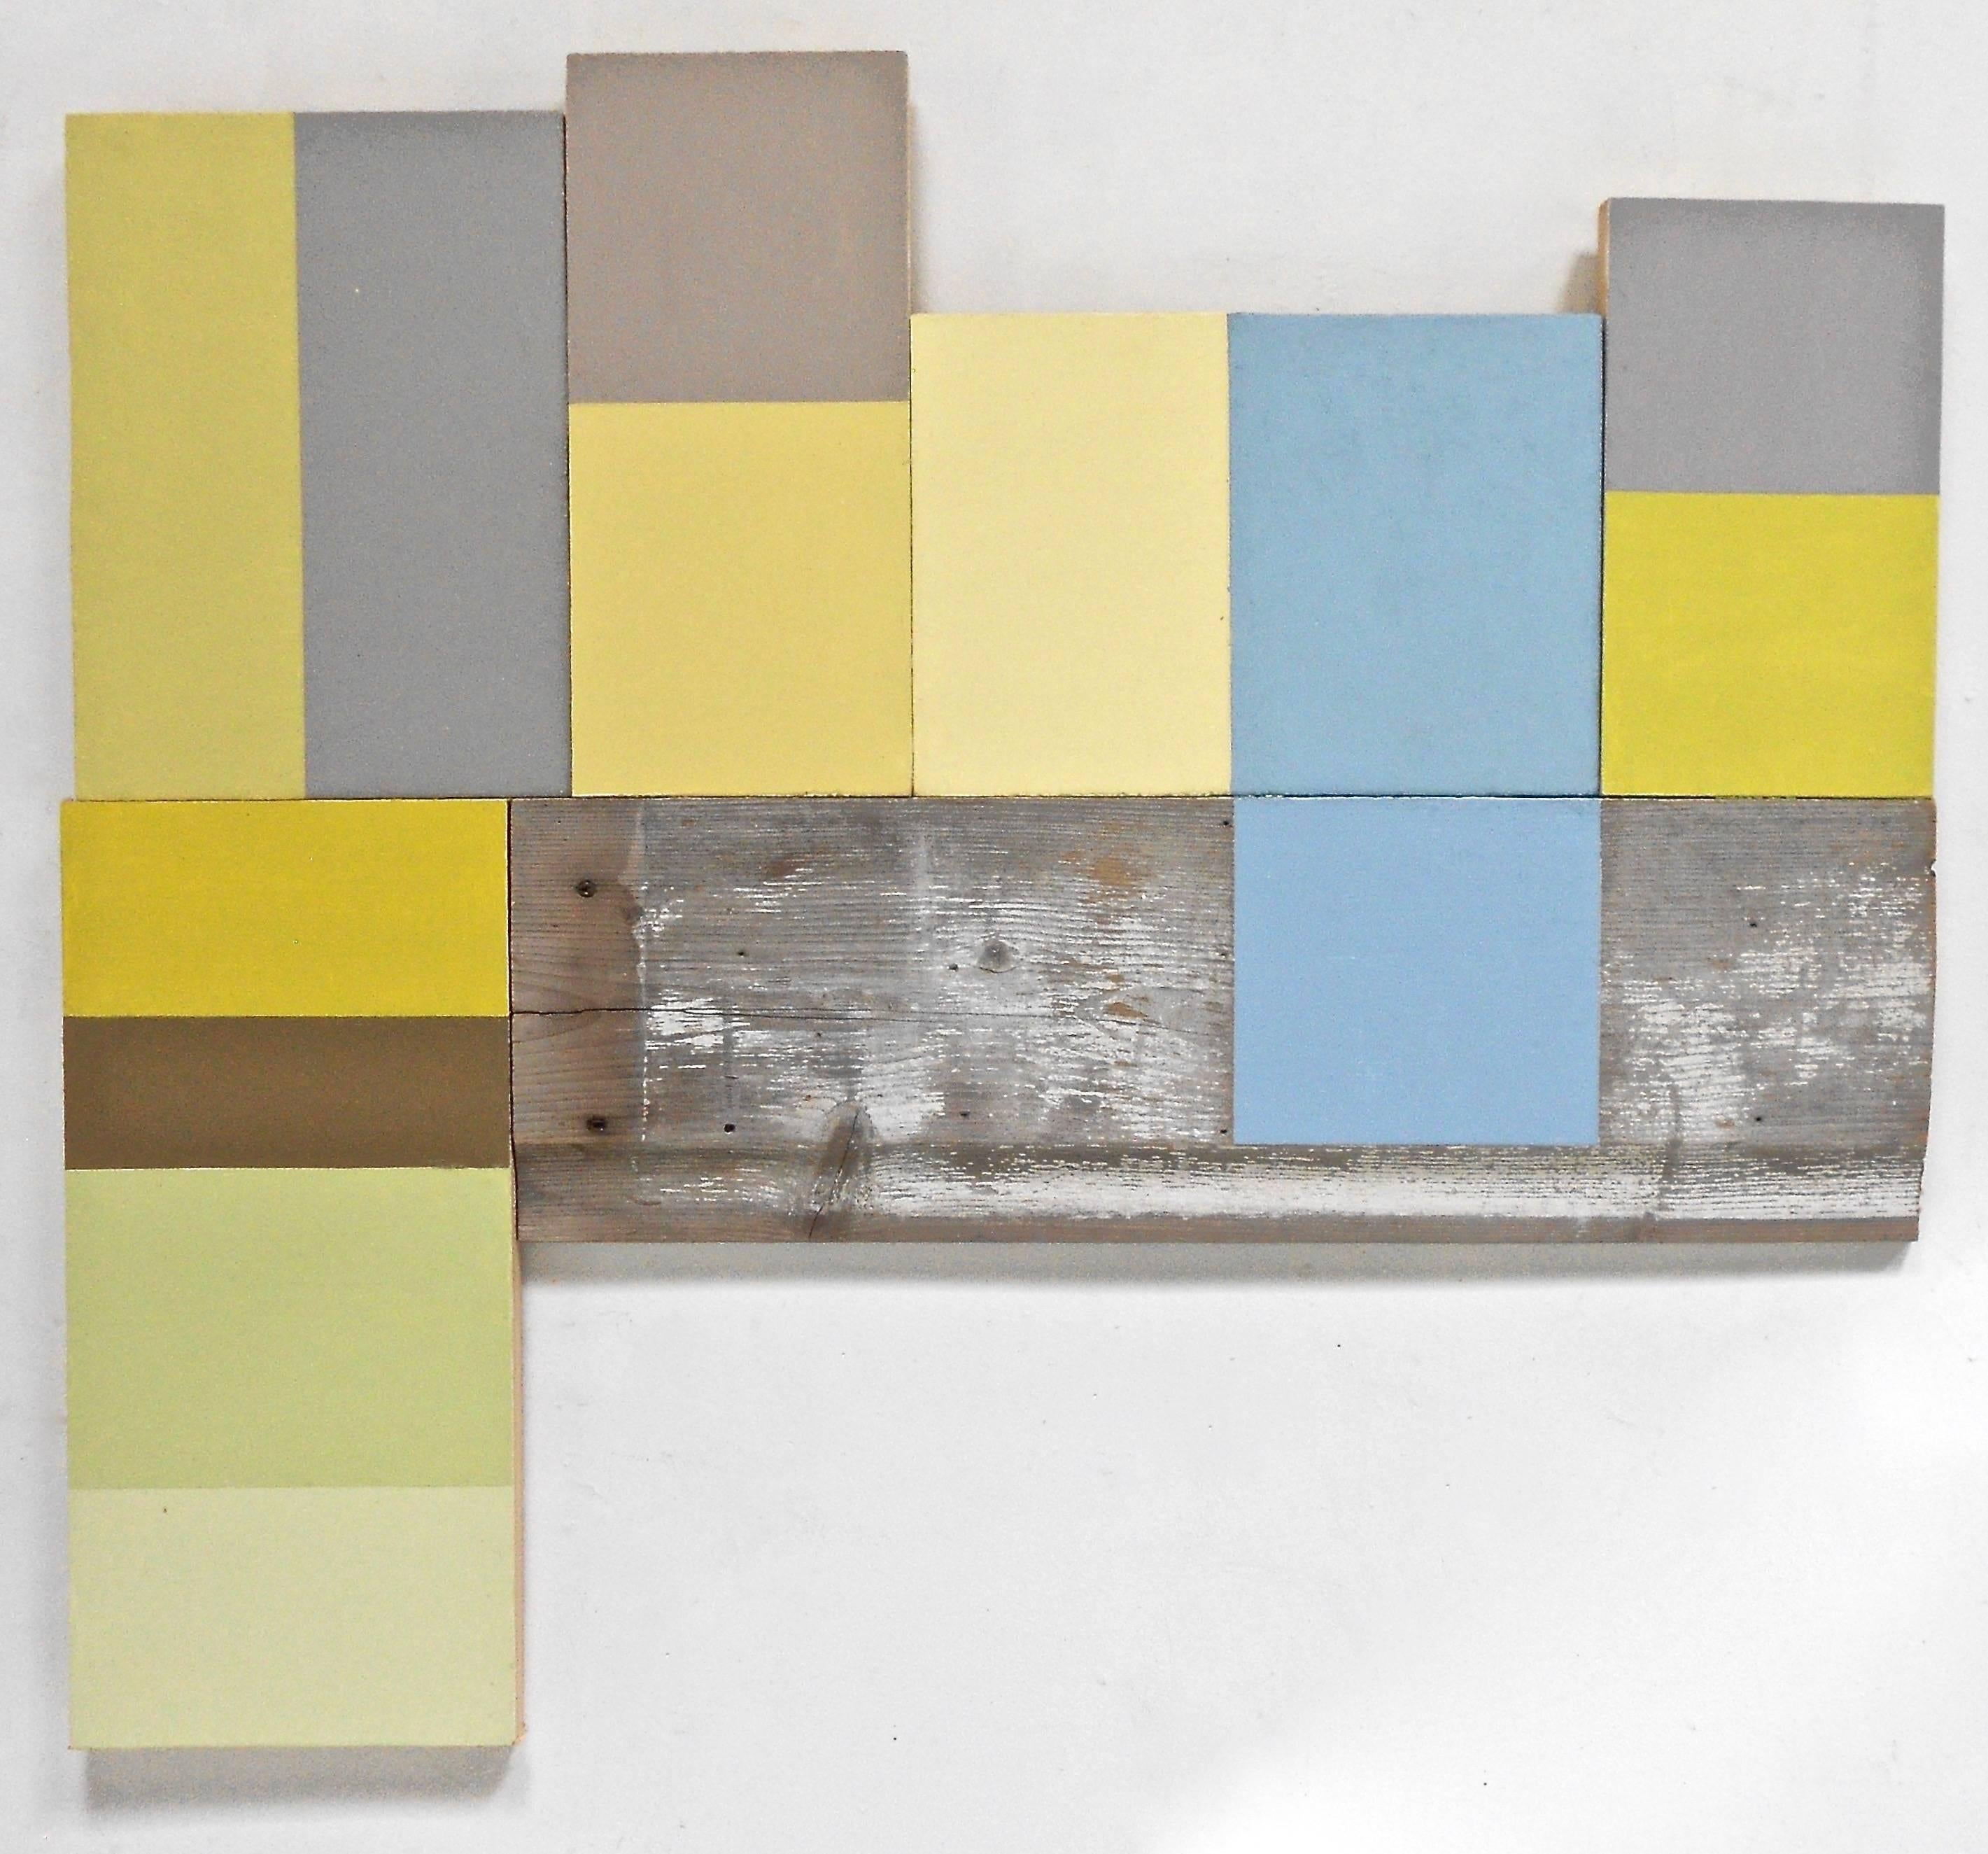 Abstract Painting Jean Feinberg - « Add-Ons », peinture à l'huile géométrique abstraite sur bois, bleu, vert et jaune, technique mixte